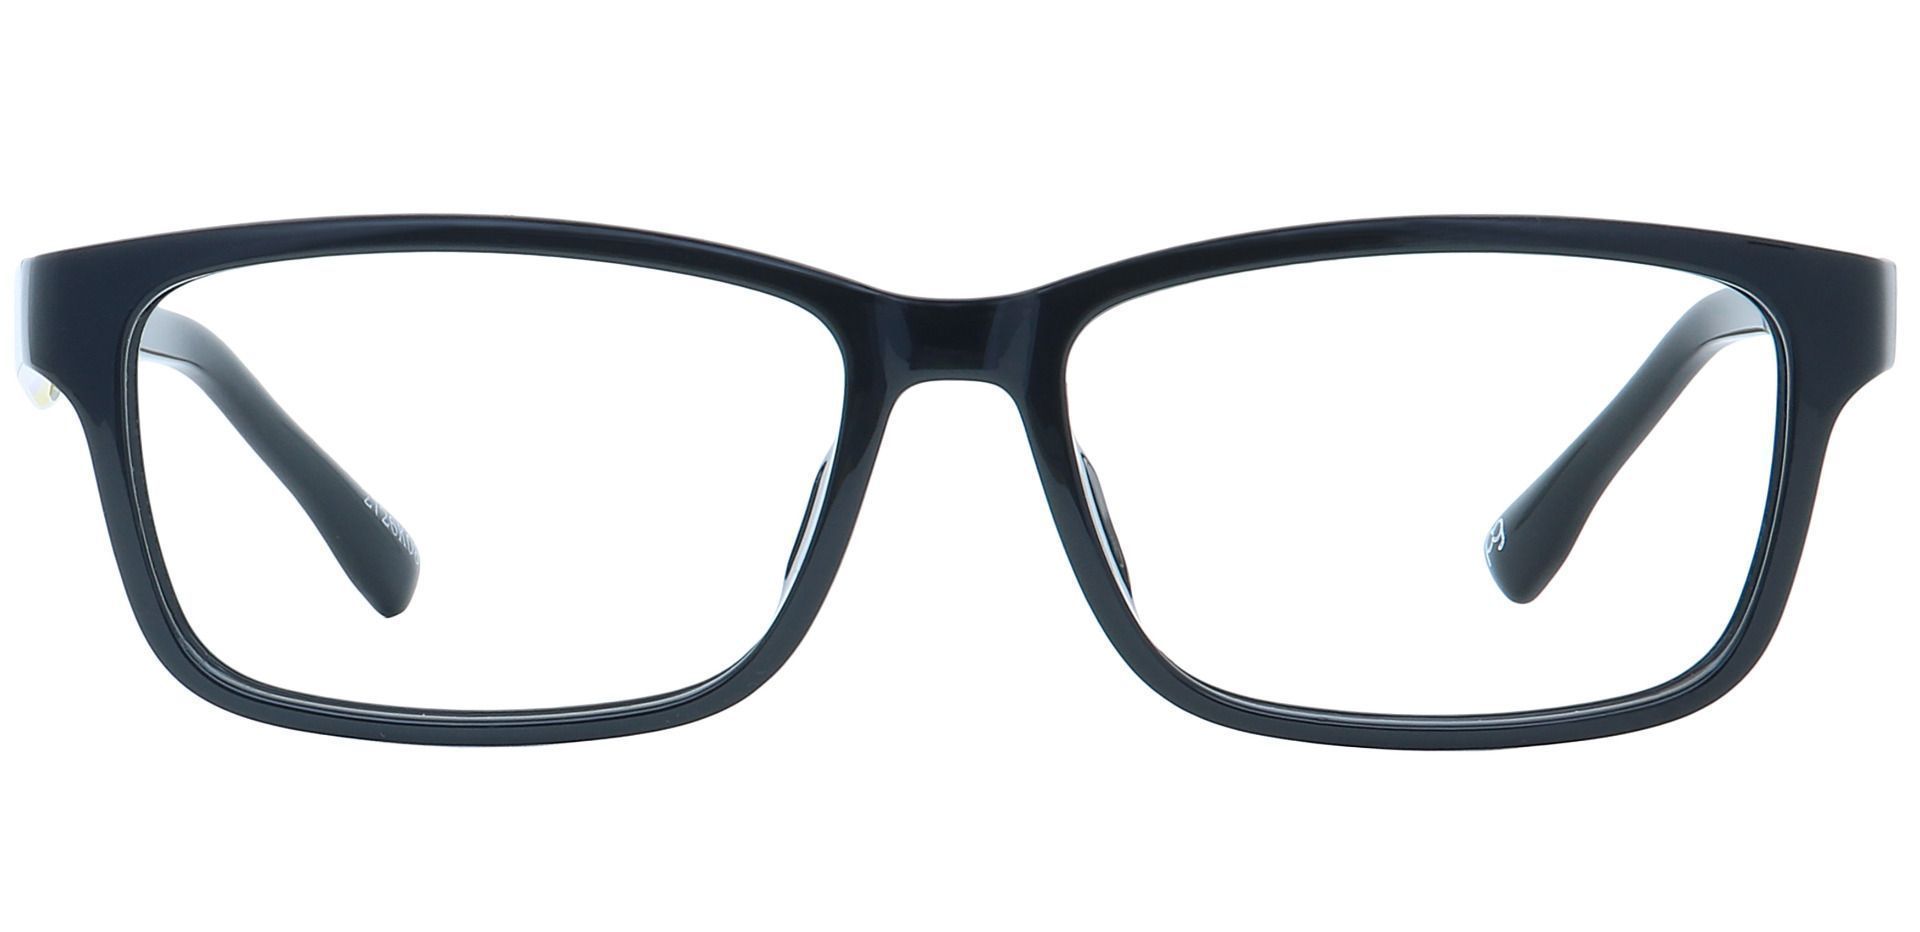 Sol Rectangle Non-Rx Glasses - Black